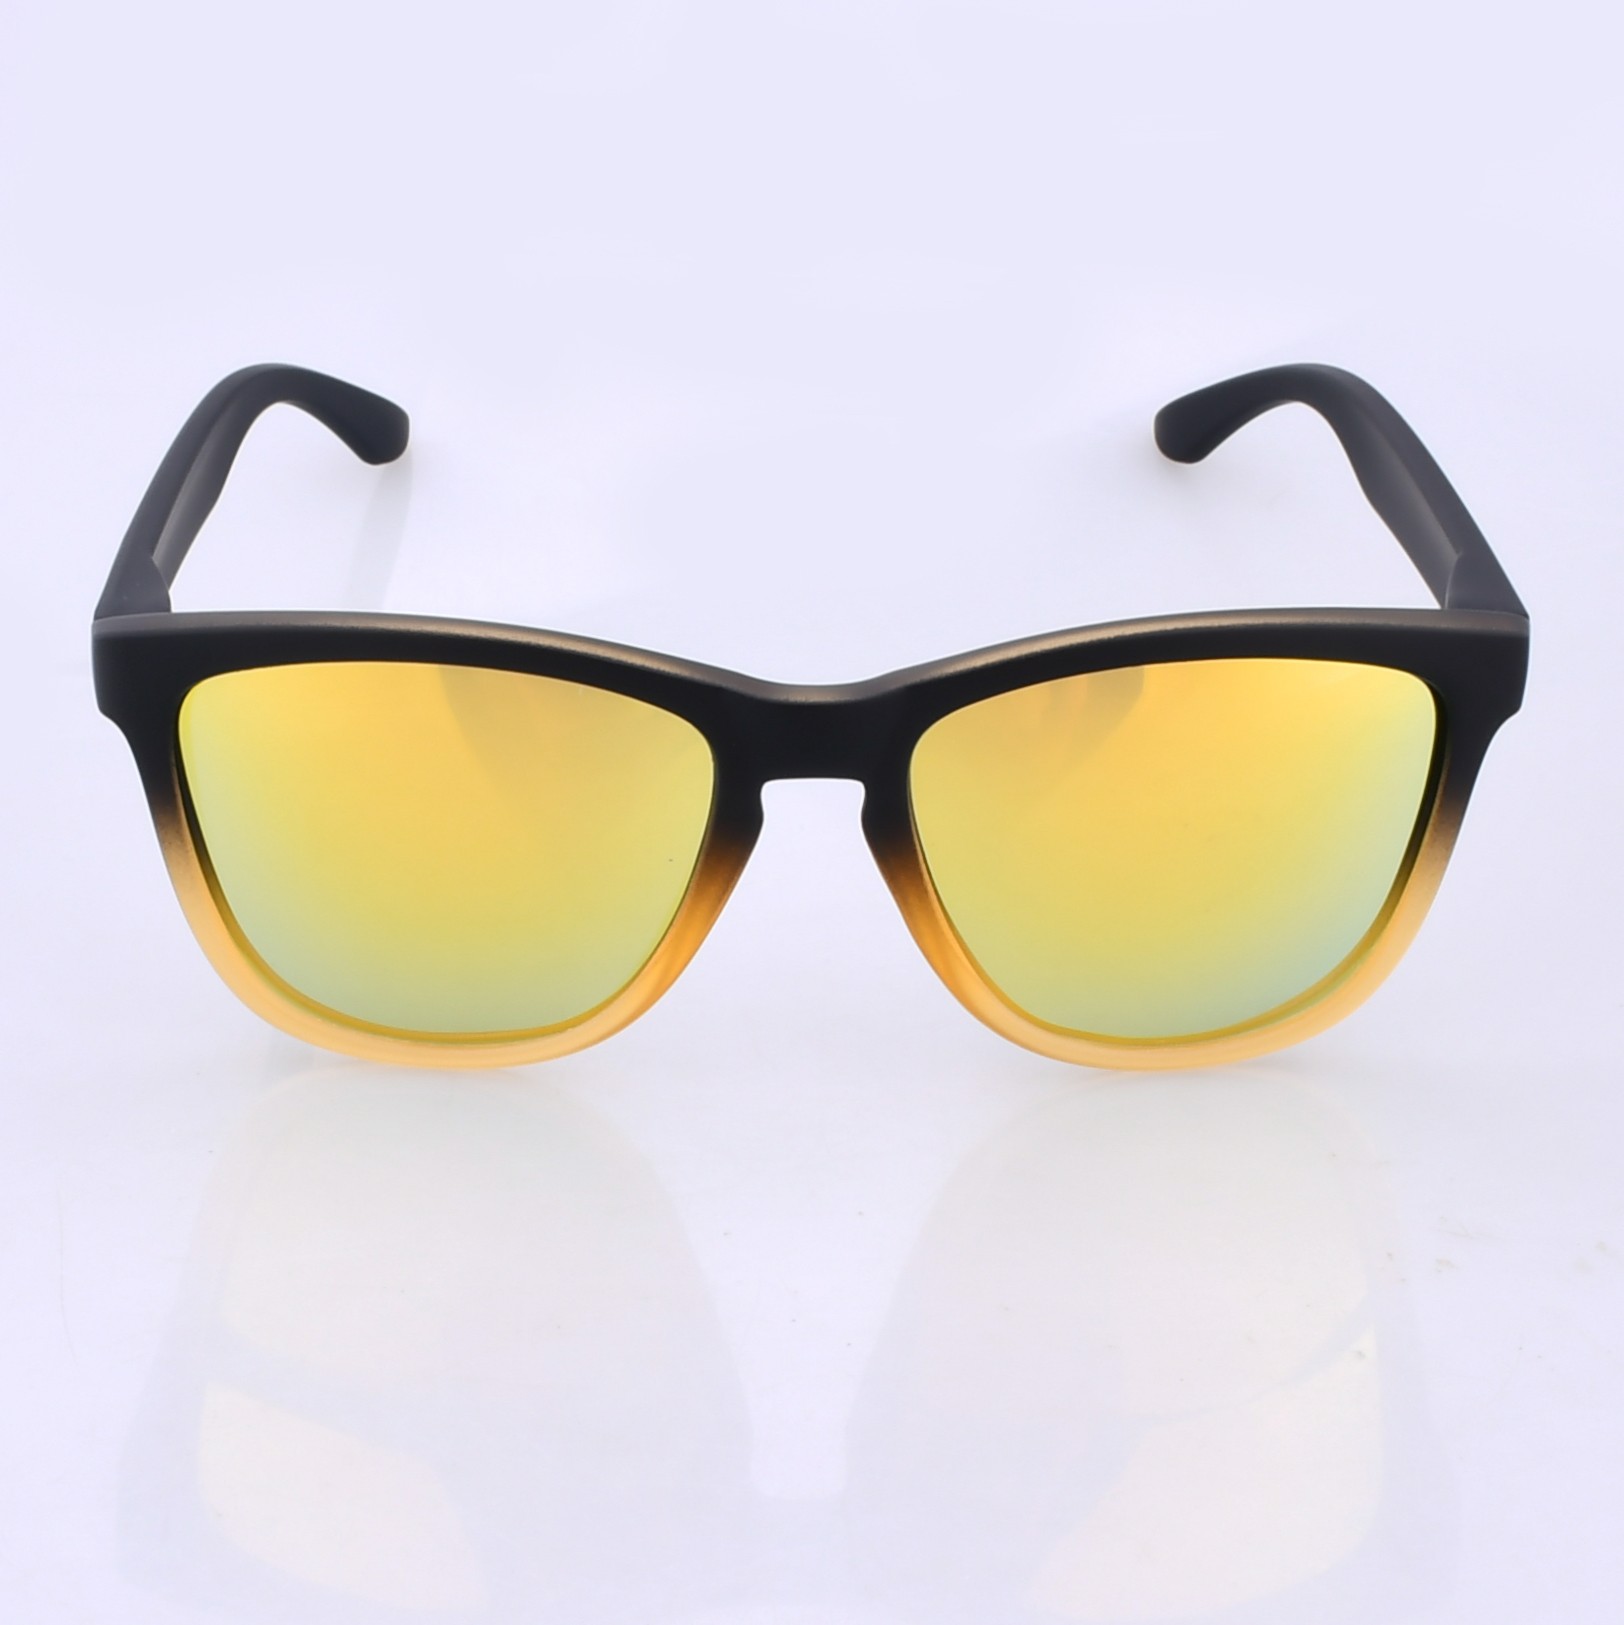 Óculos de Sol Polarizado - Modelo Brazil - Amarelo cristal - Express  Polarizados